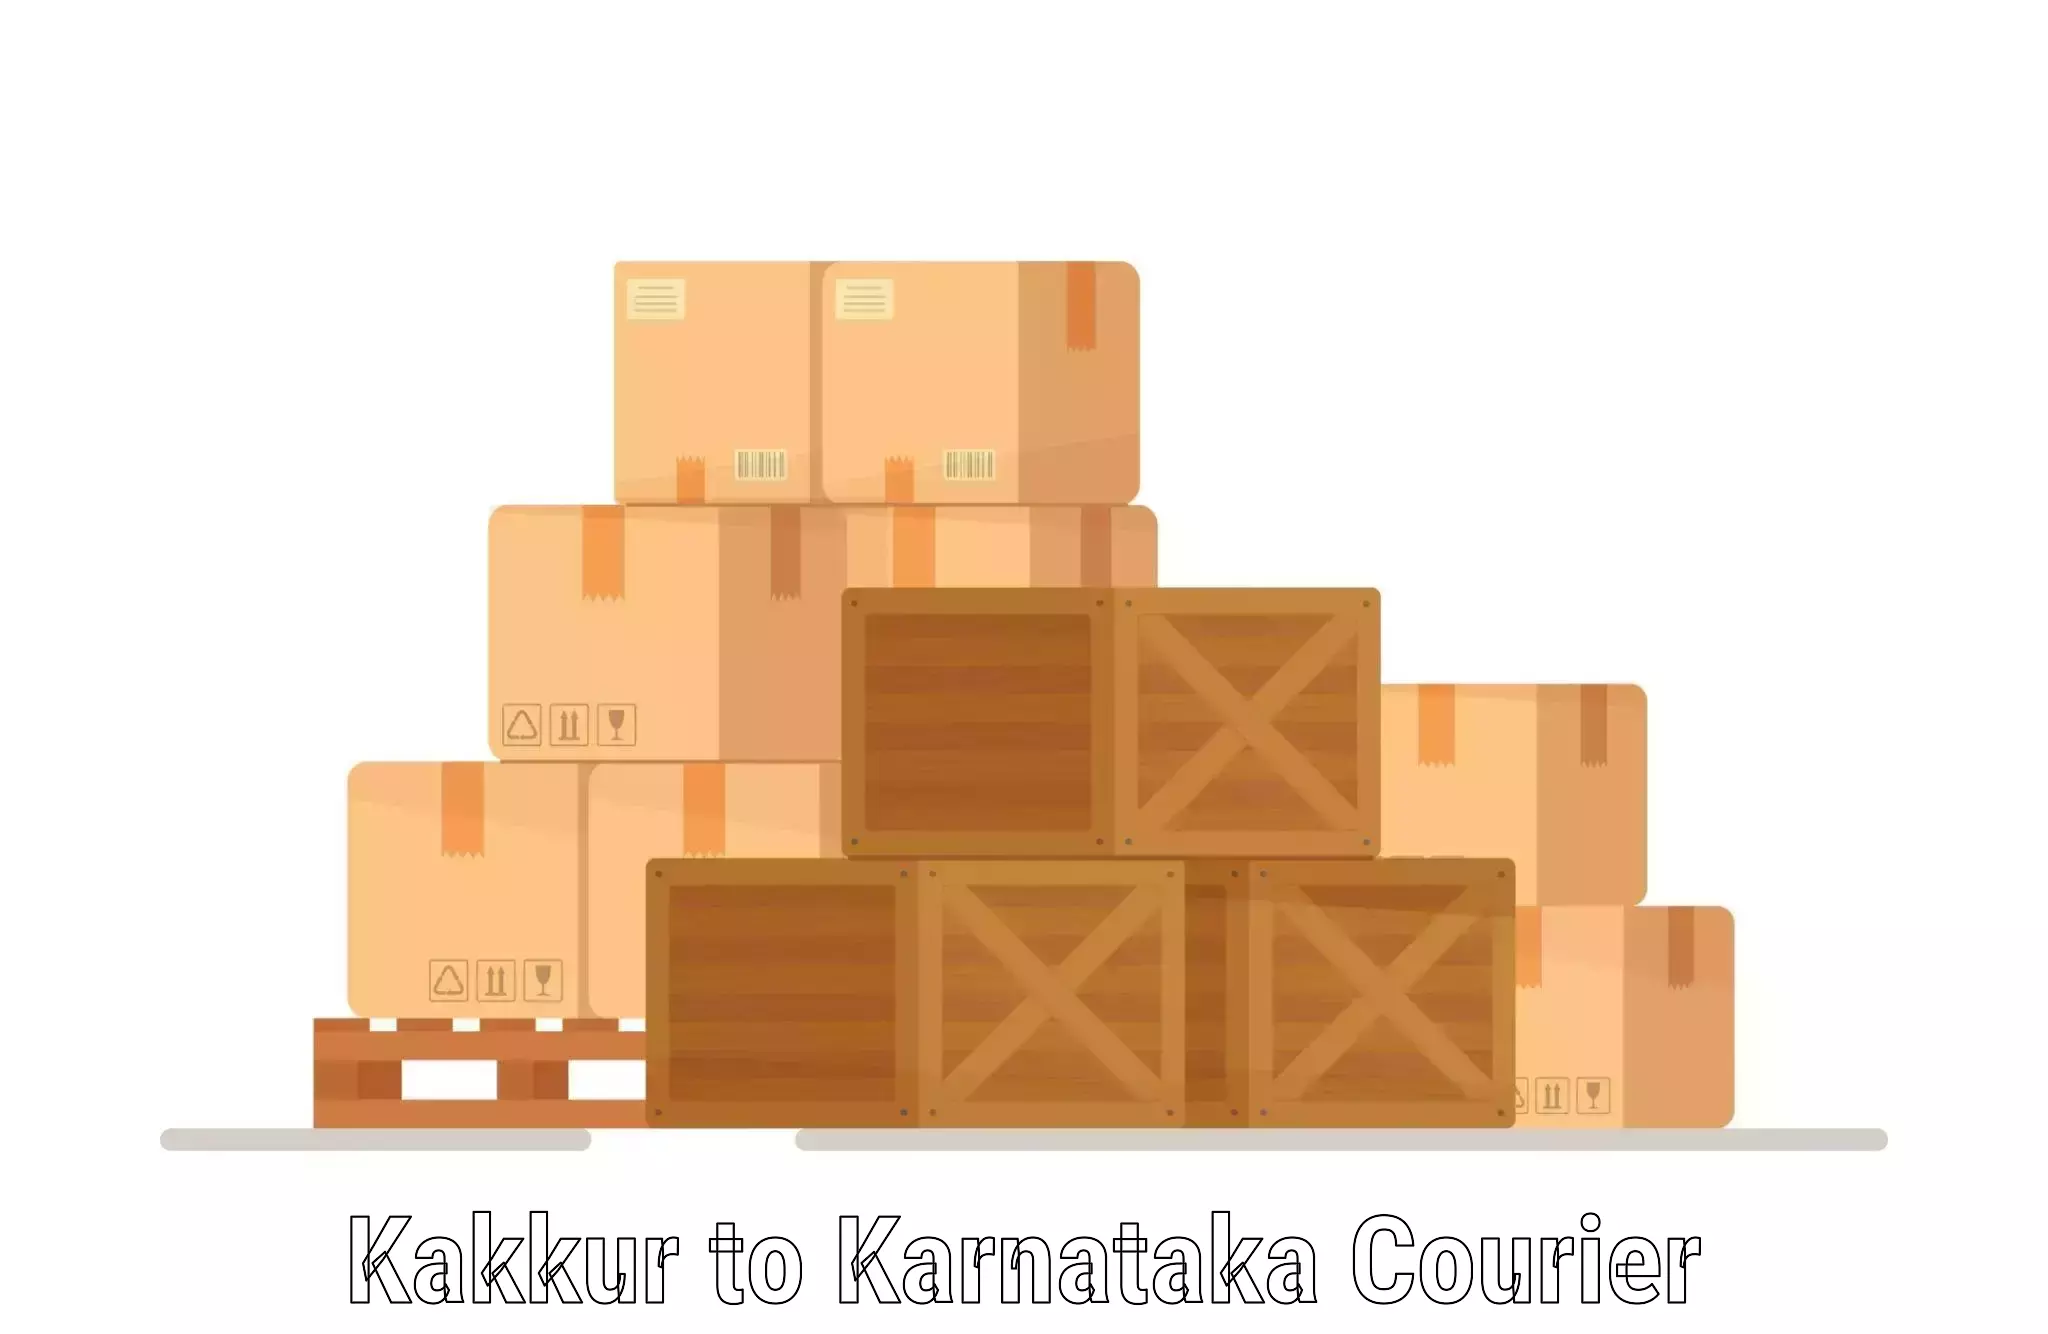 Express courier facilities Kakkur to Heggadadevankote